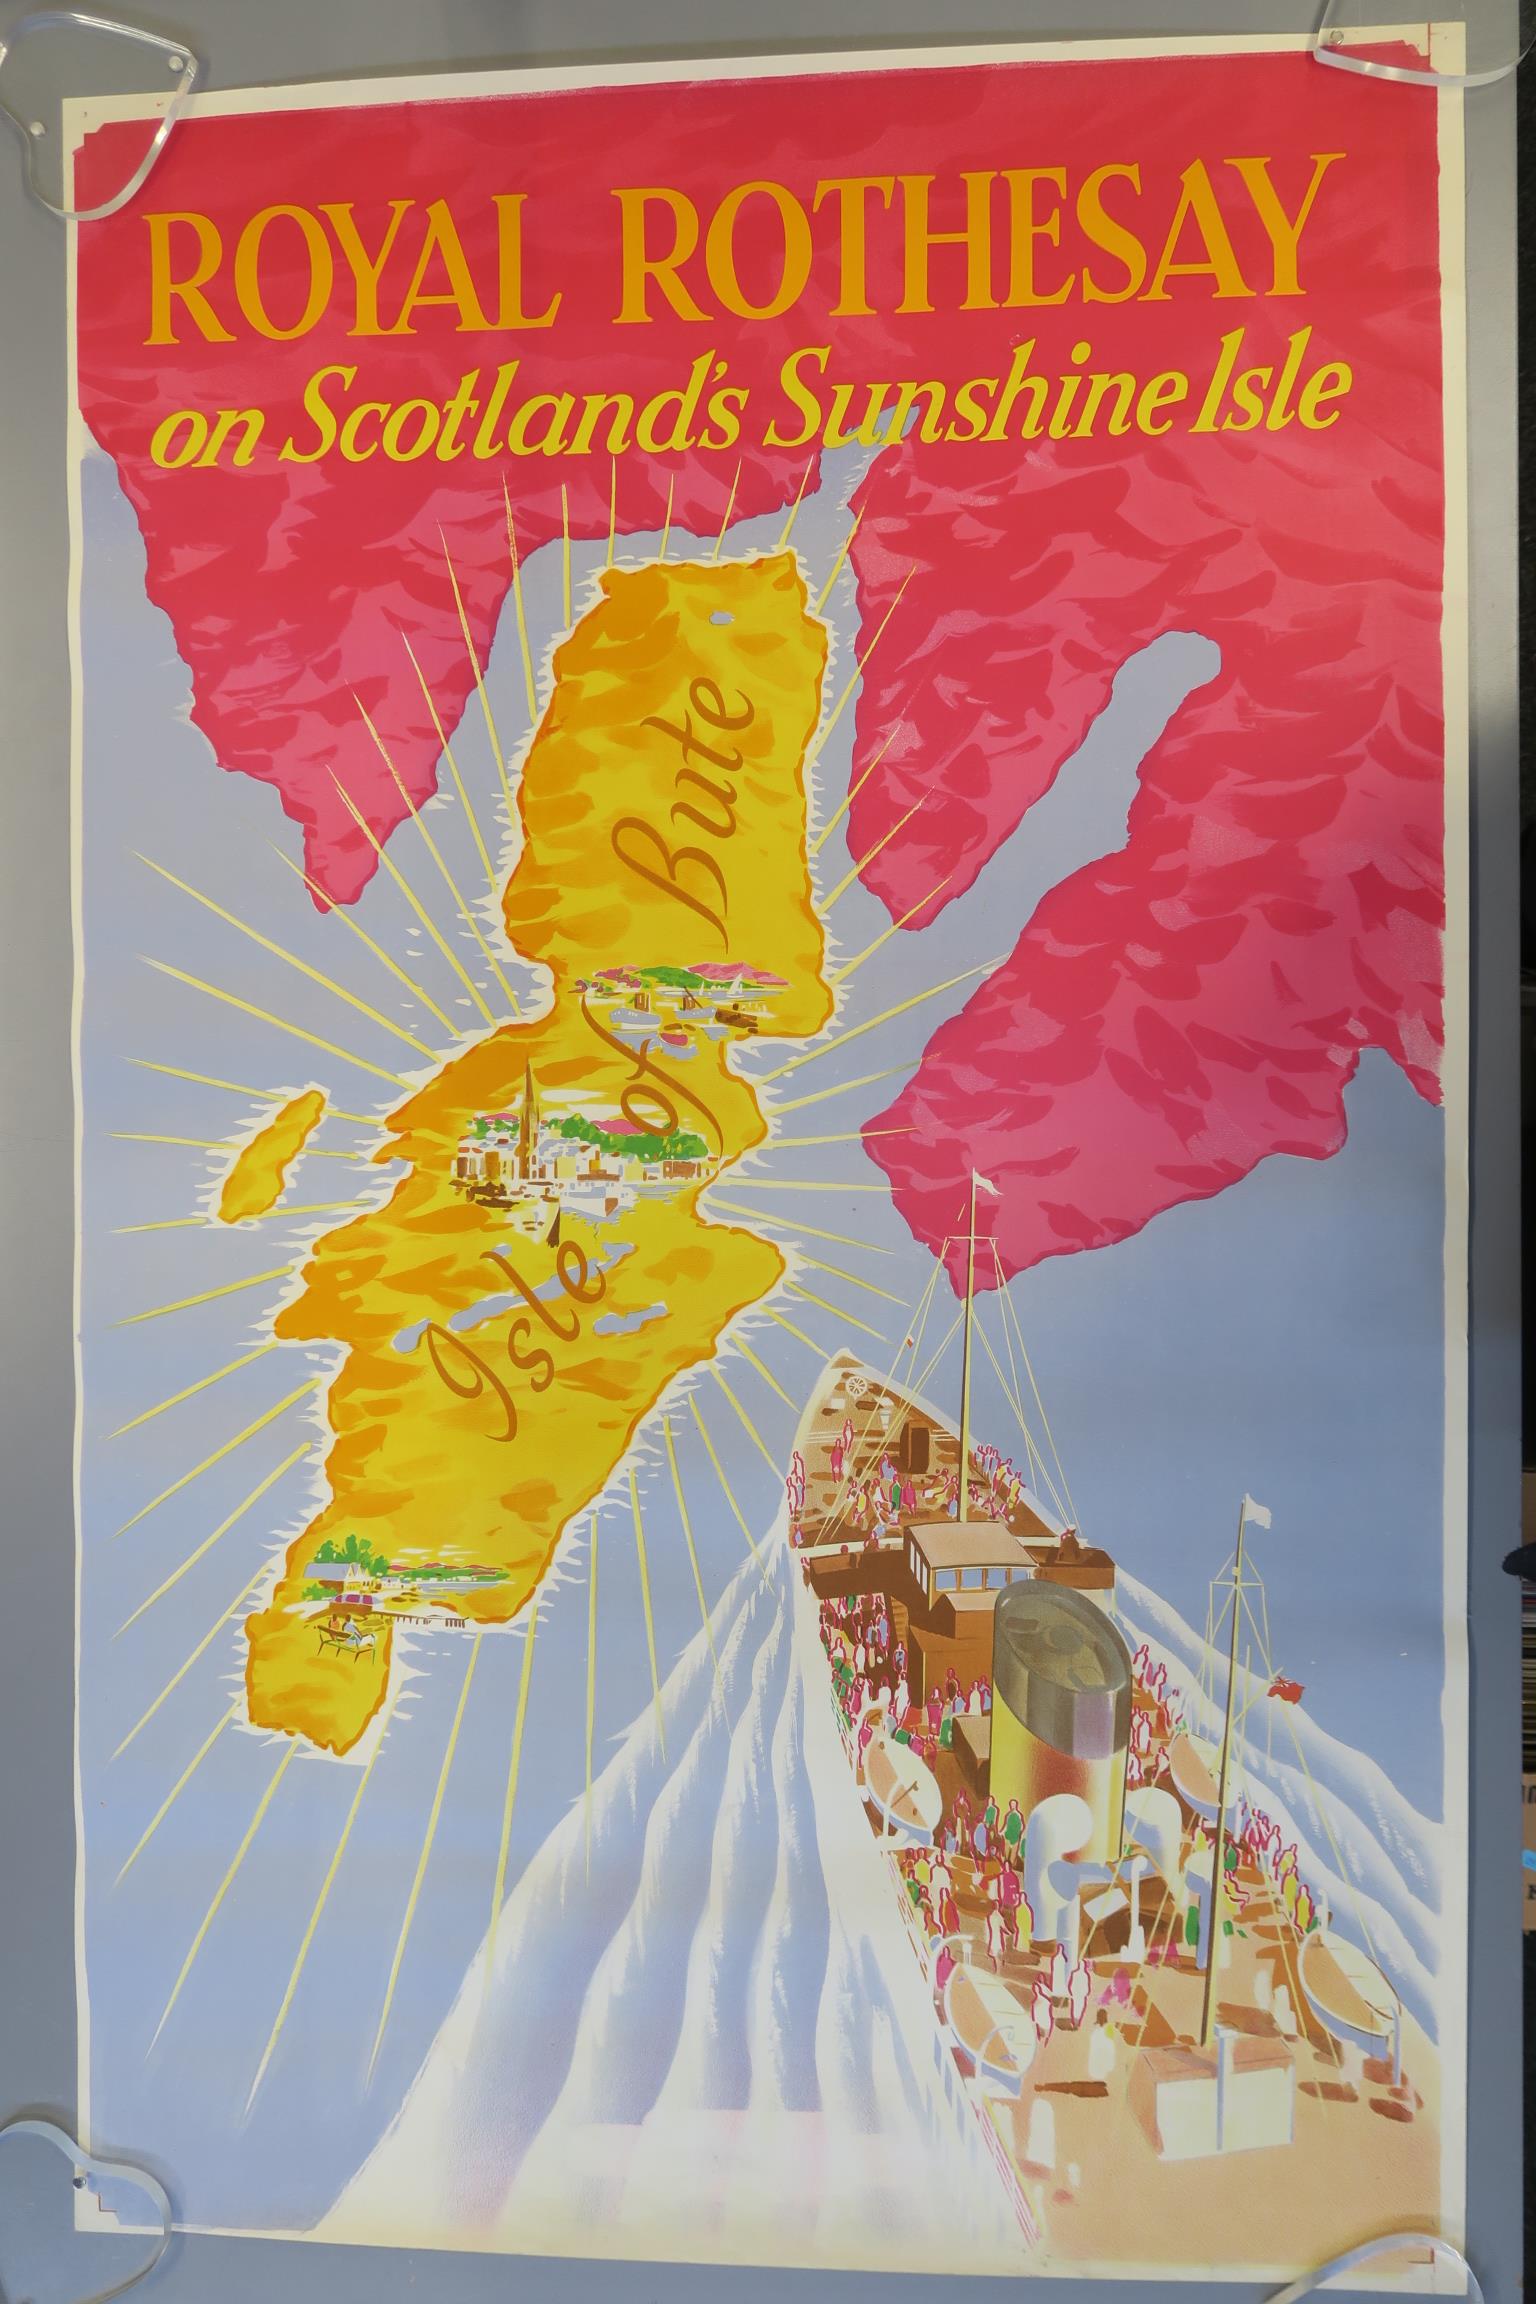 Vintage travel posters including British Railways 1959 "Royal Rothesay on Scotland's Sunshine Isle" - Image 2 of 3